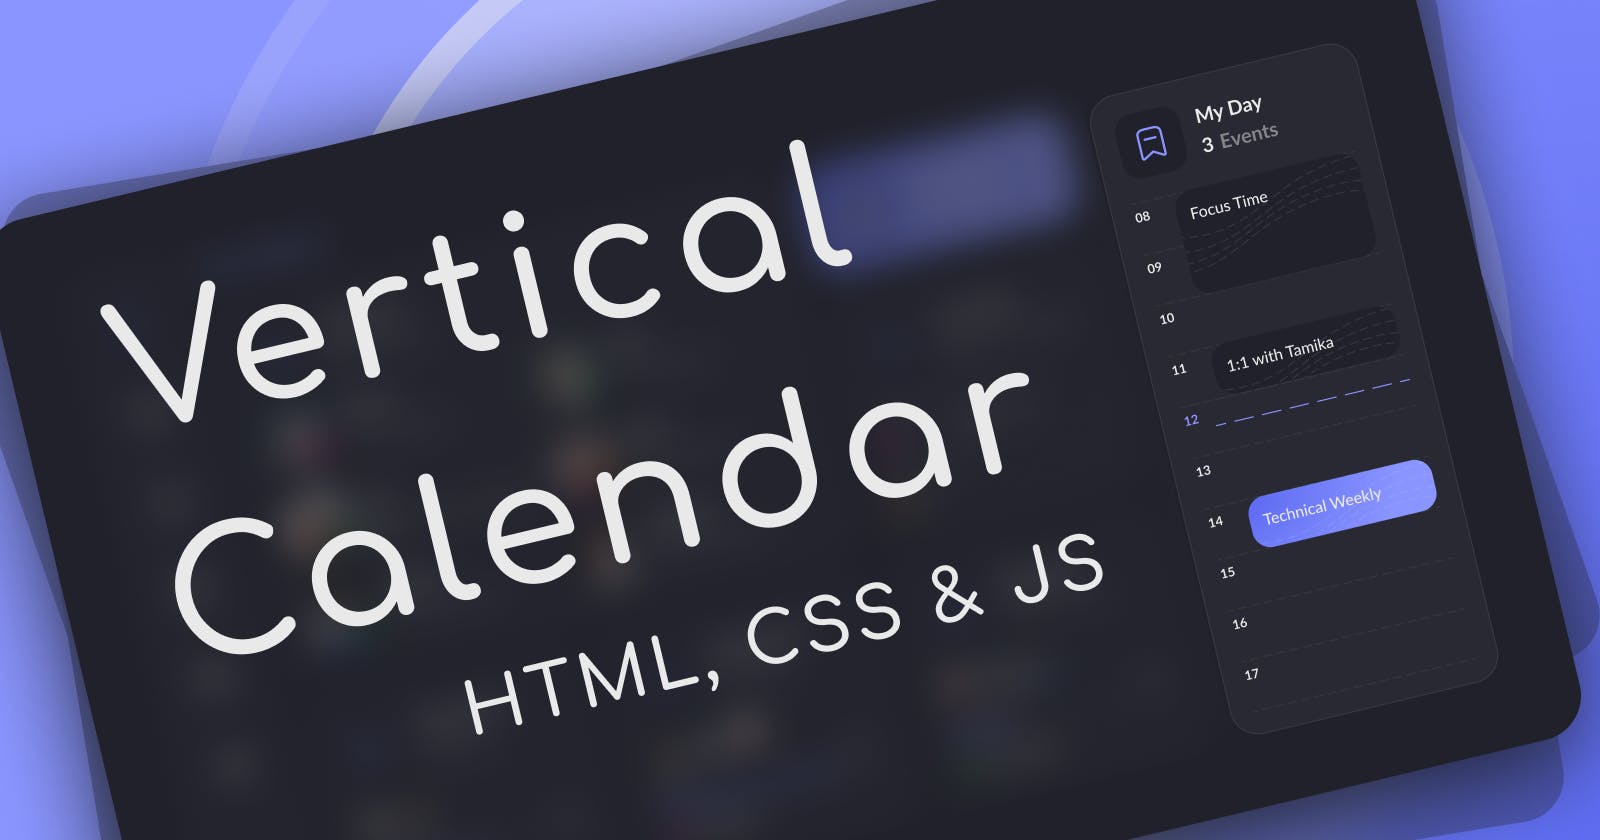 Building a vertical calendar with HTML, CSS & JS